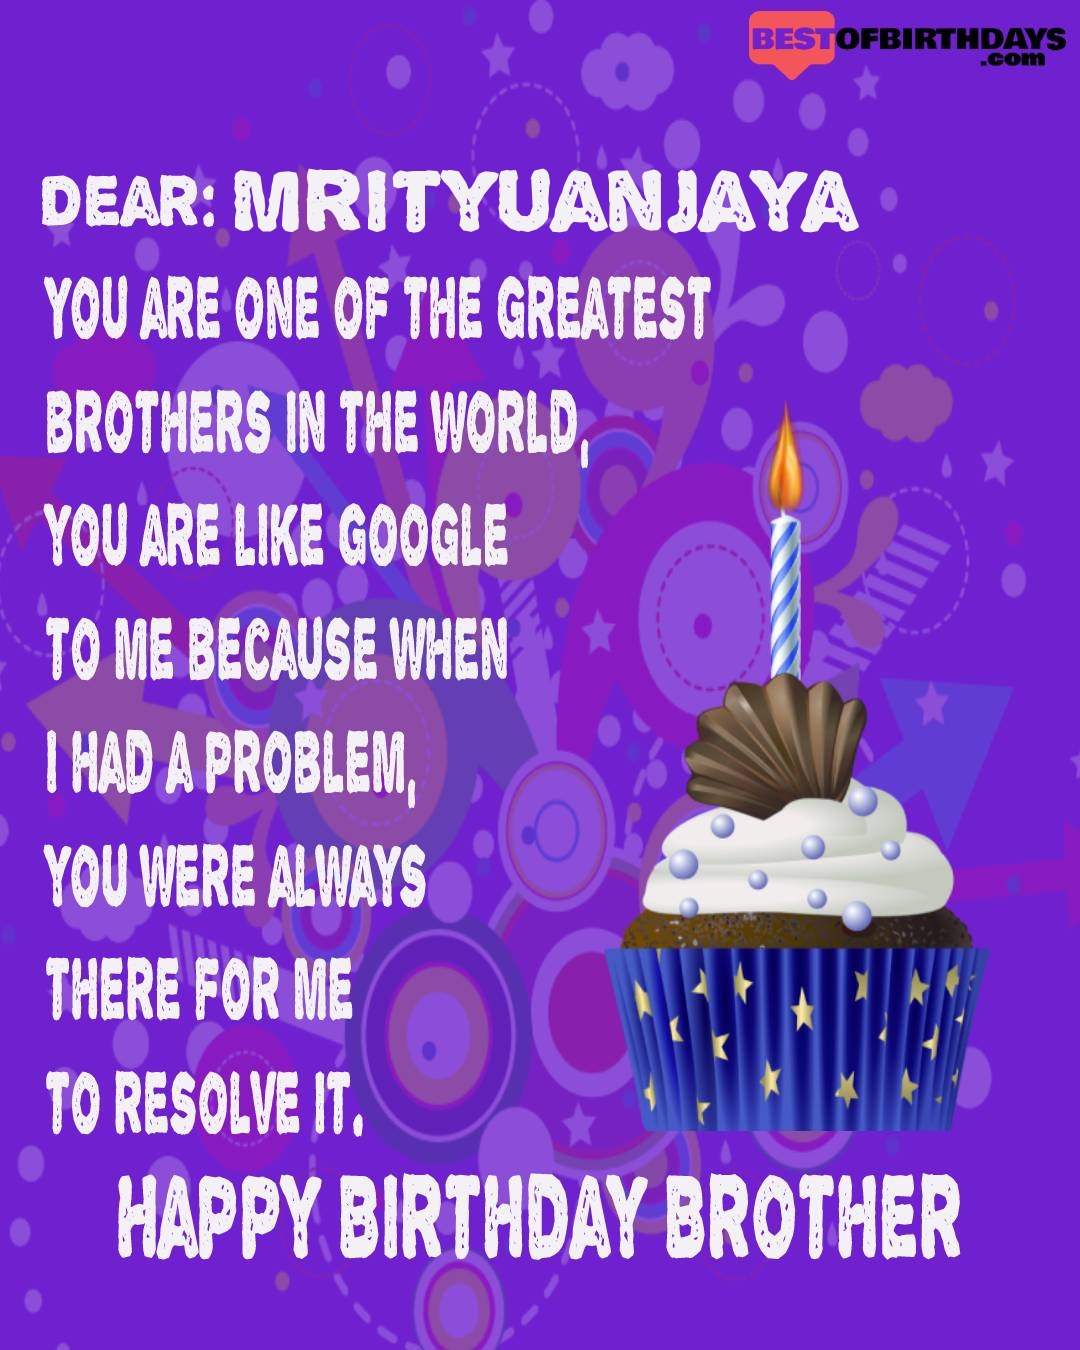 Happy birthday mrityuanjaya bhai brother bro